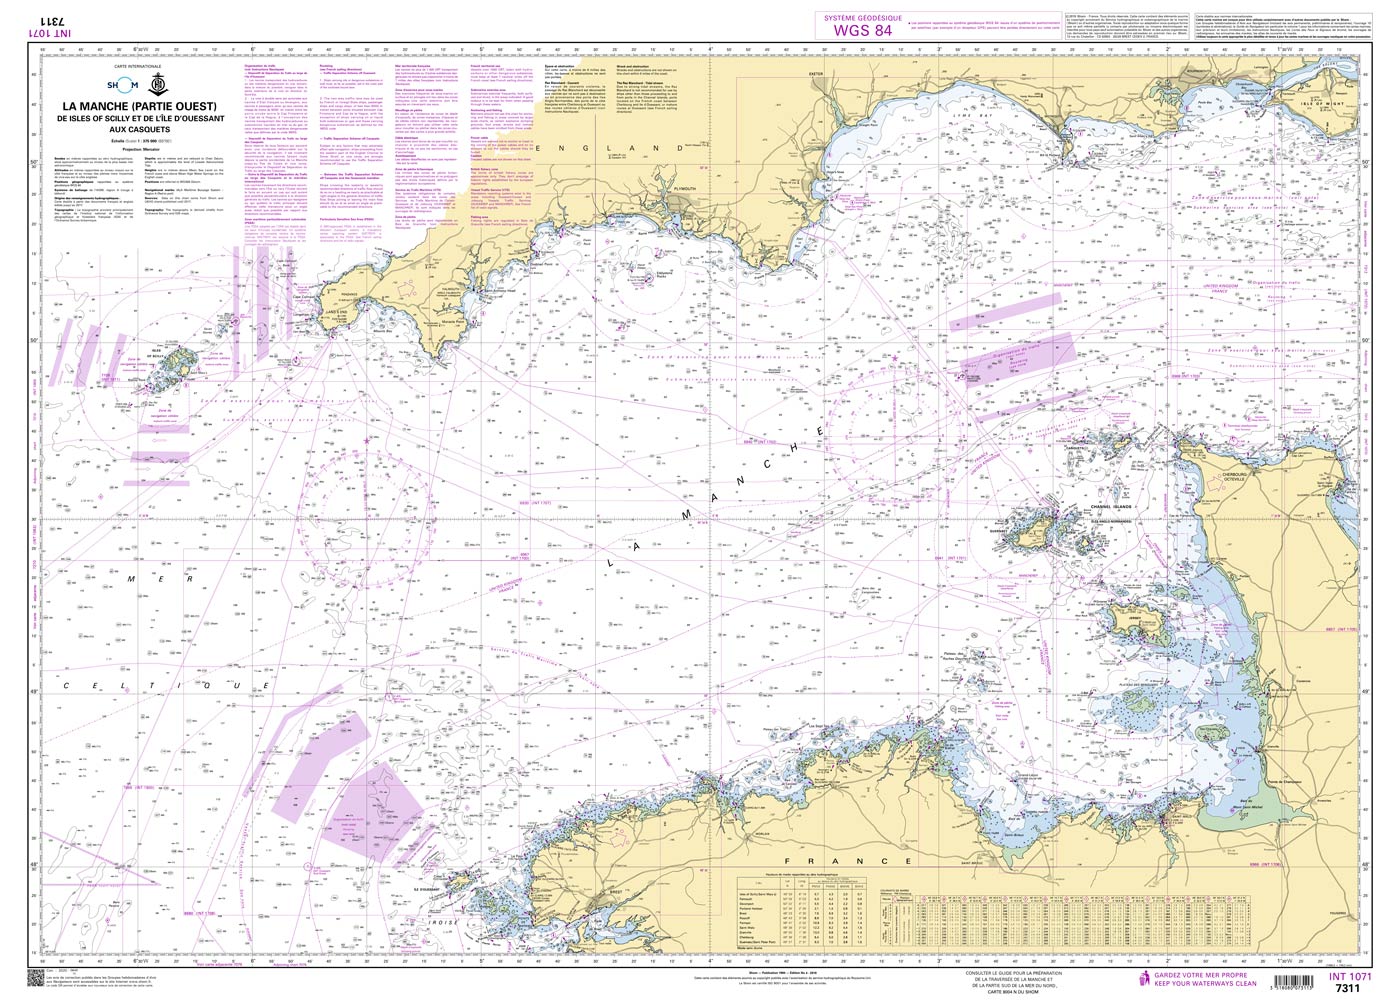 Shom 7311 - INT 1071 La Manche (Partie Ouest) - De Isles of Scilly et de l'Île d'Ouessant aux Casquets